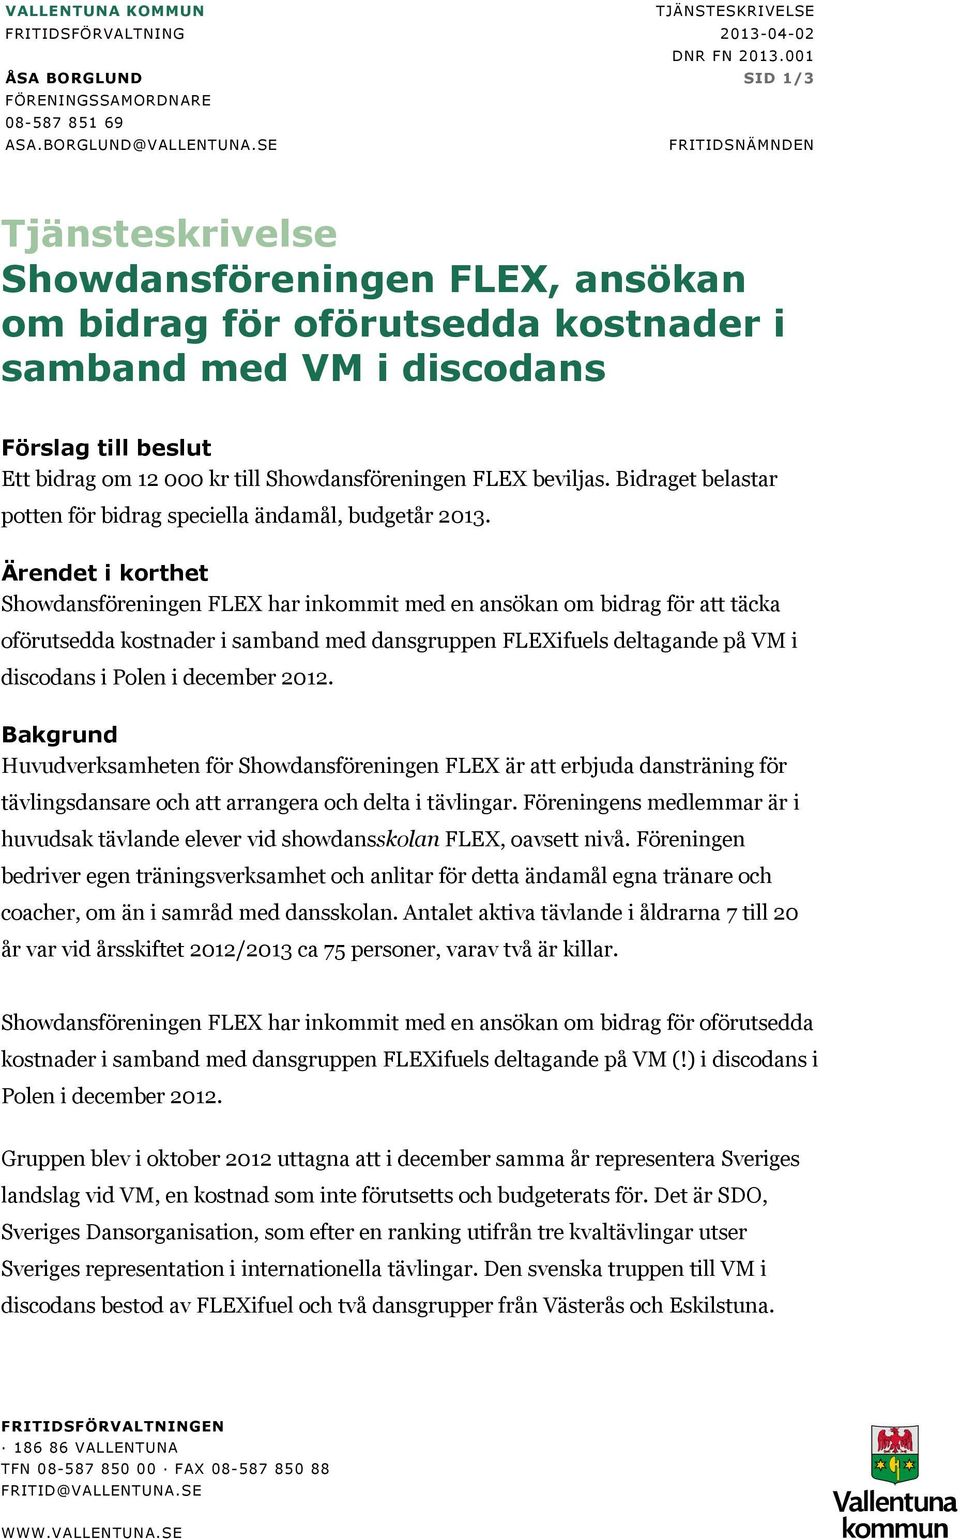 Showdansföreningen FLEX beviljas. Bidraget belastar potten för bidrag speciella ändamål, budgetår 2013.